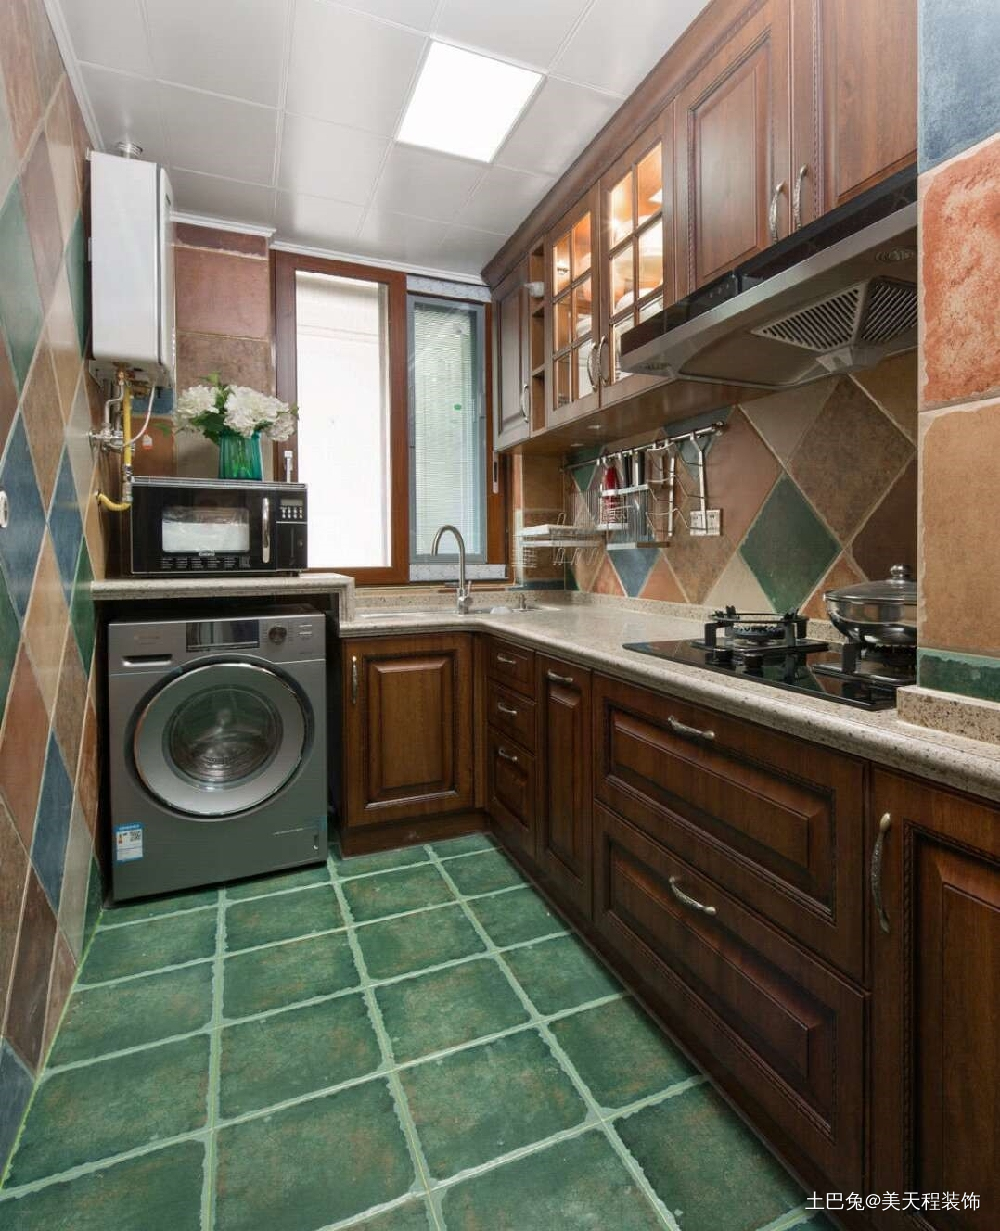 三室两厅的美式风格颜色搭配丰富多彩美式经典厨房设计图片赏析